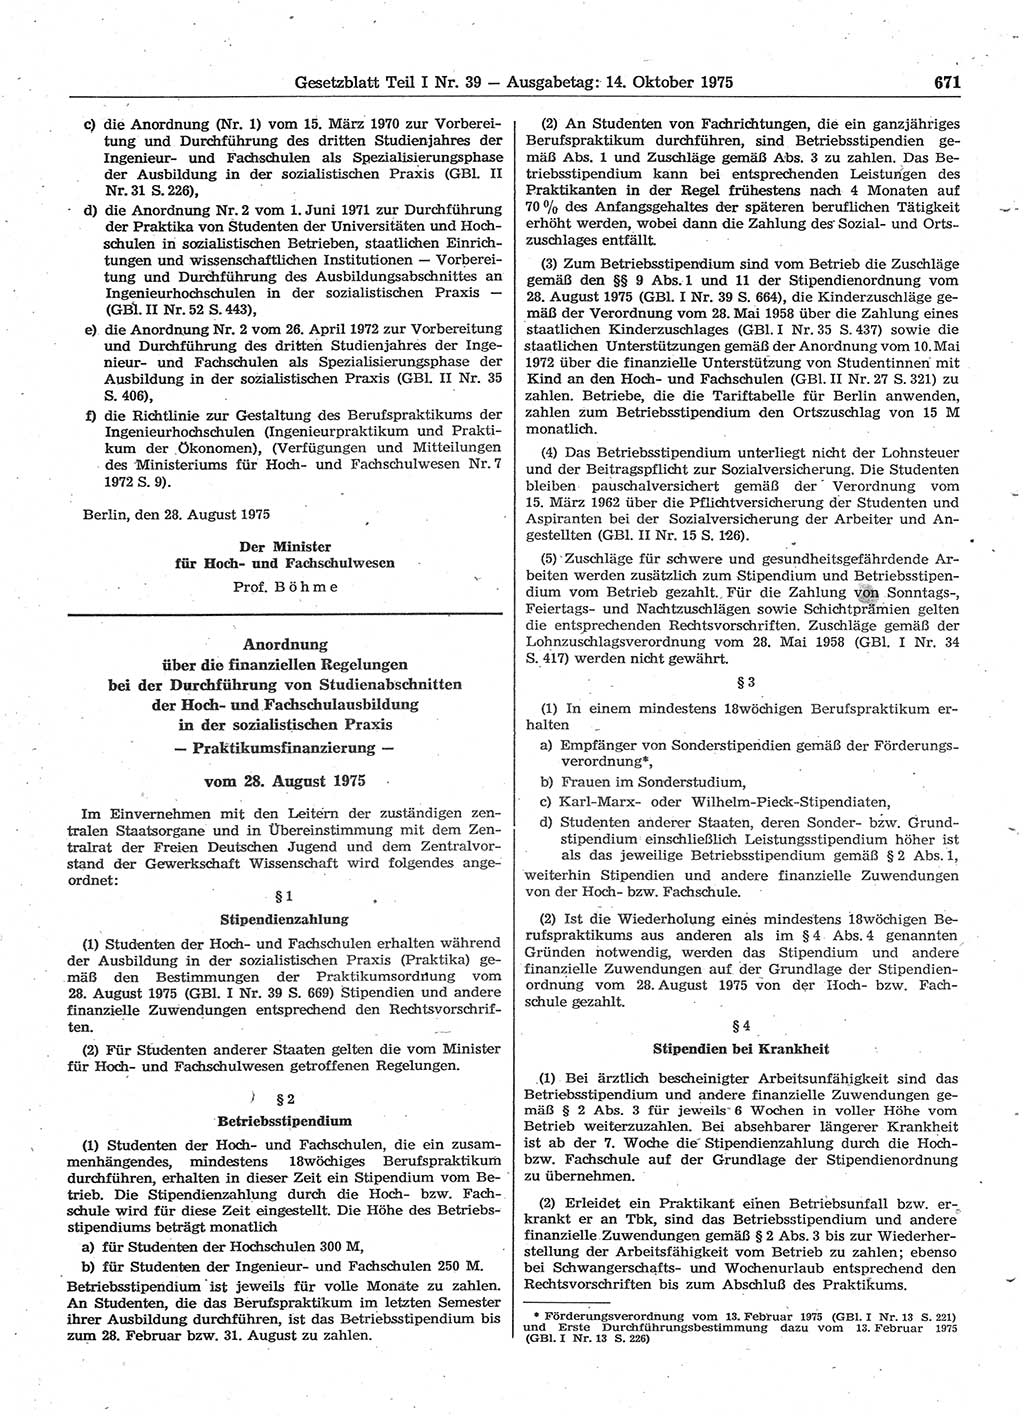 Gesetzblatt (GBl.) der Deutschen Demokratischen Republik (DDR) Teil Ⅰ 1975, Seite 671 (GBl. DDR Ⅰ 1975, S. 671)